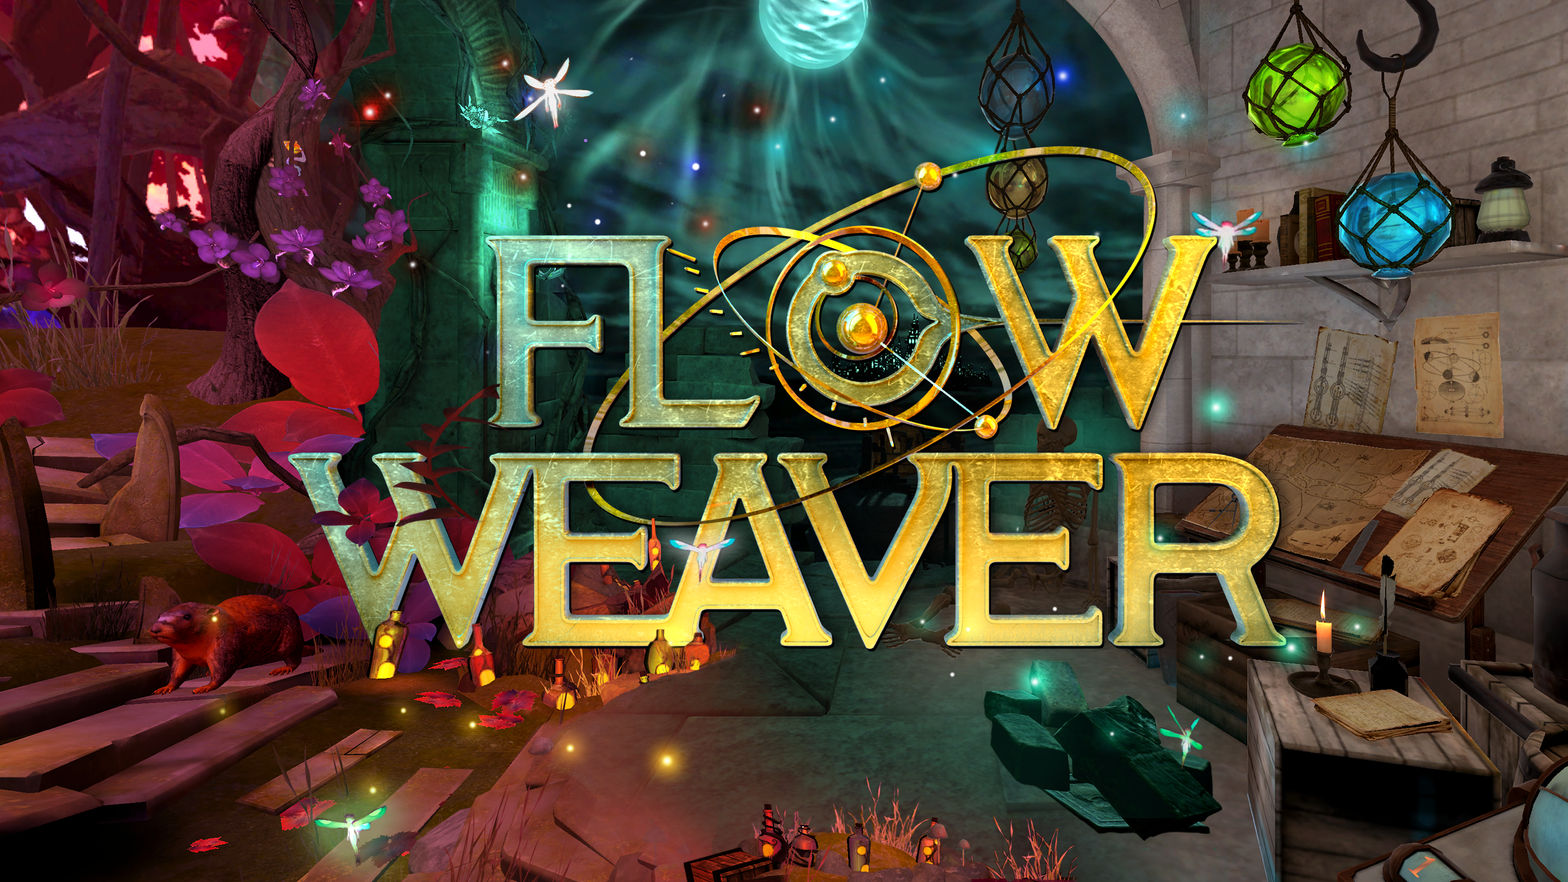 Flow Weaver